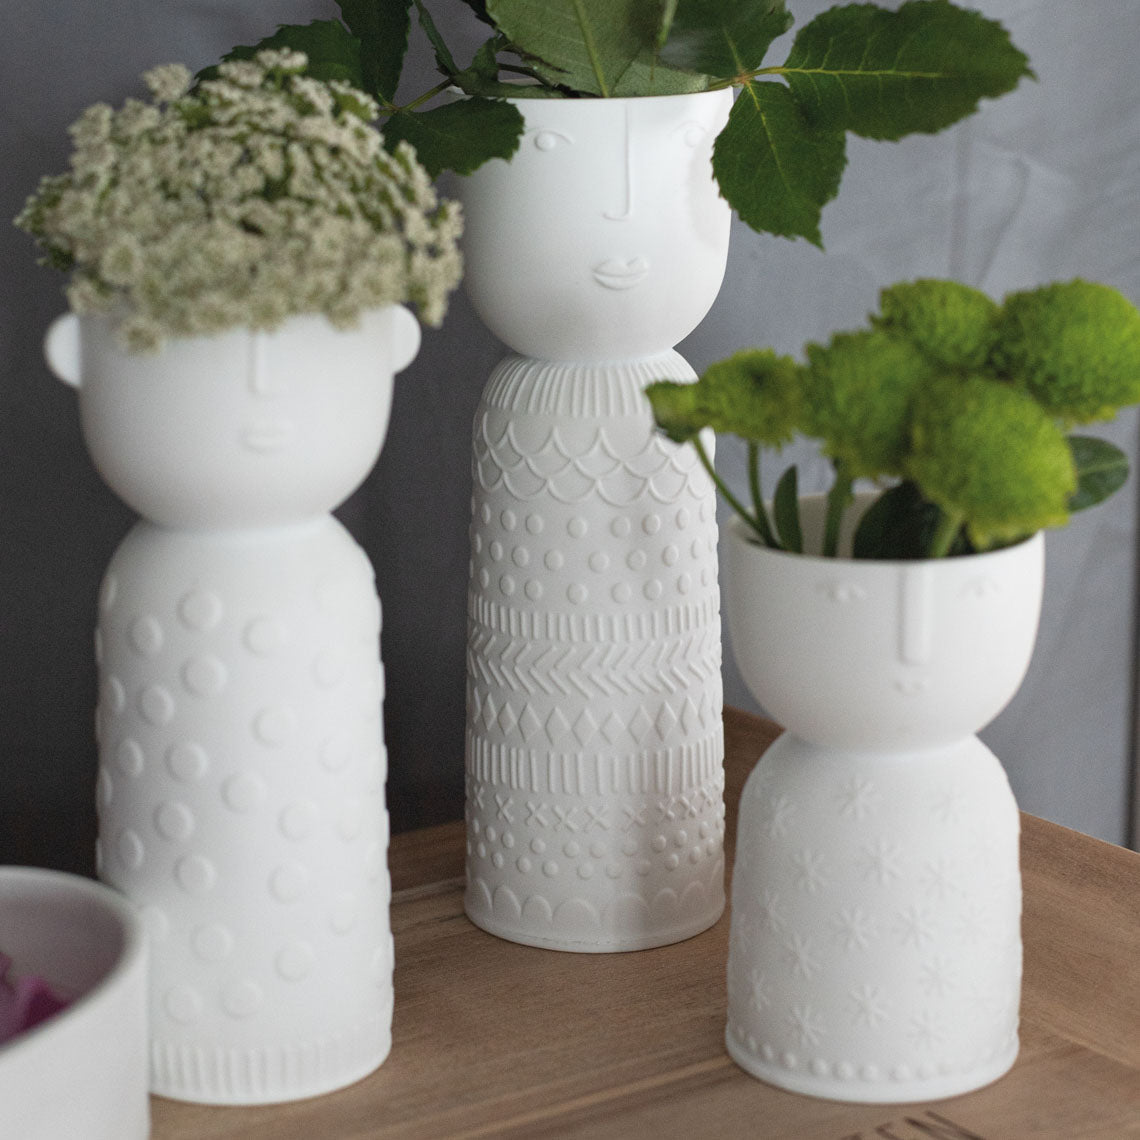 Stella Flower Vase - The Nancy Smillie Shop - Art, Jewellery & Designer Gifts Glasgow